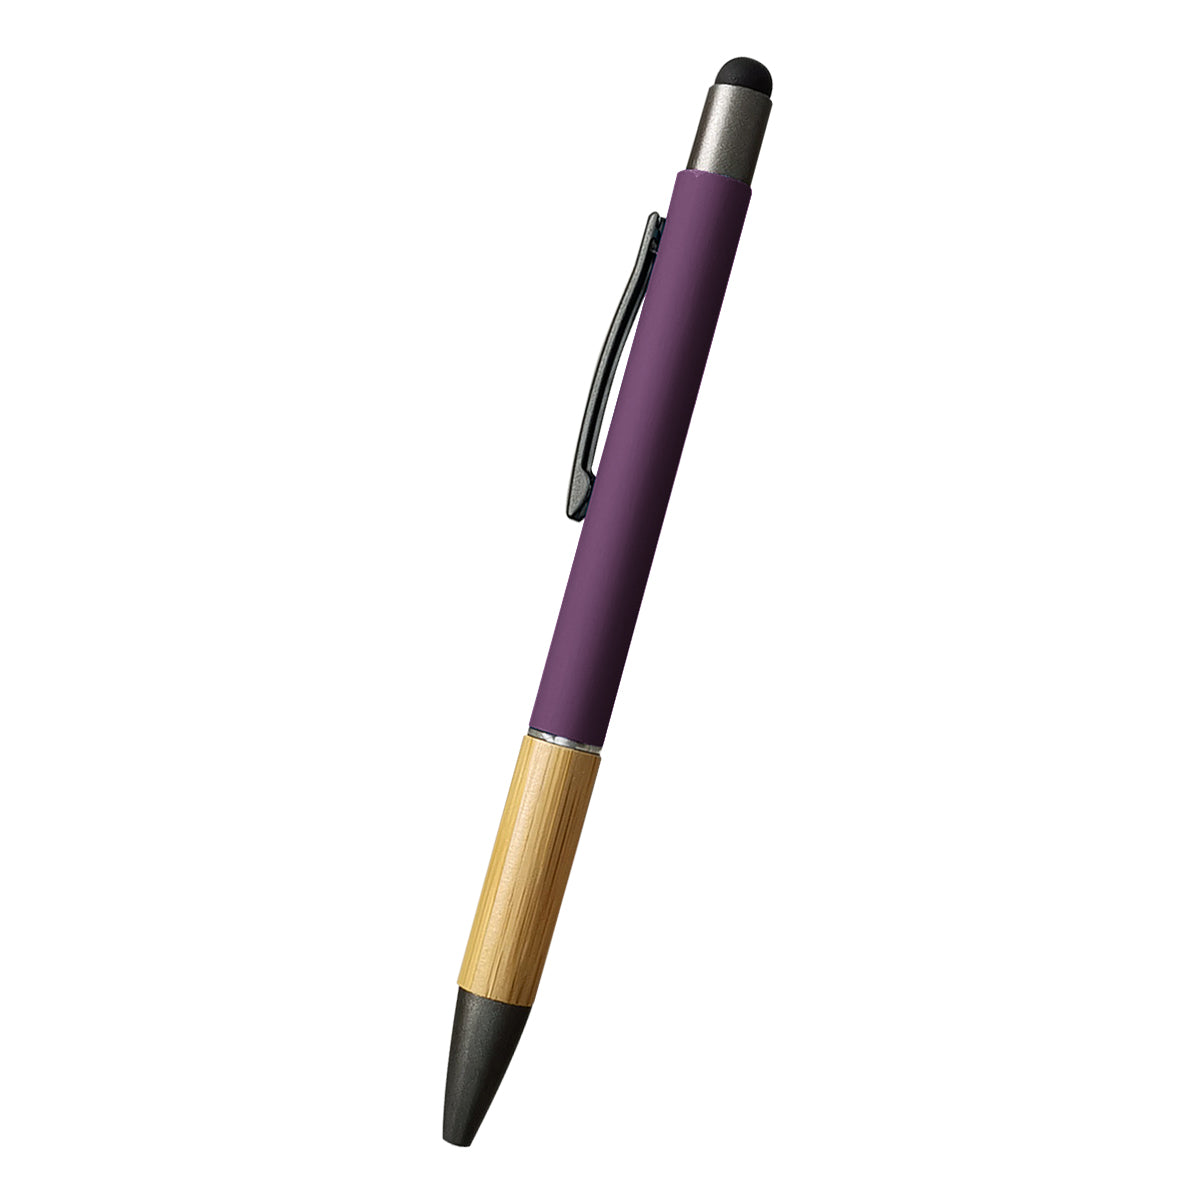 Customizable Aidan bamboo stylus pen in purple.